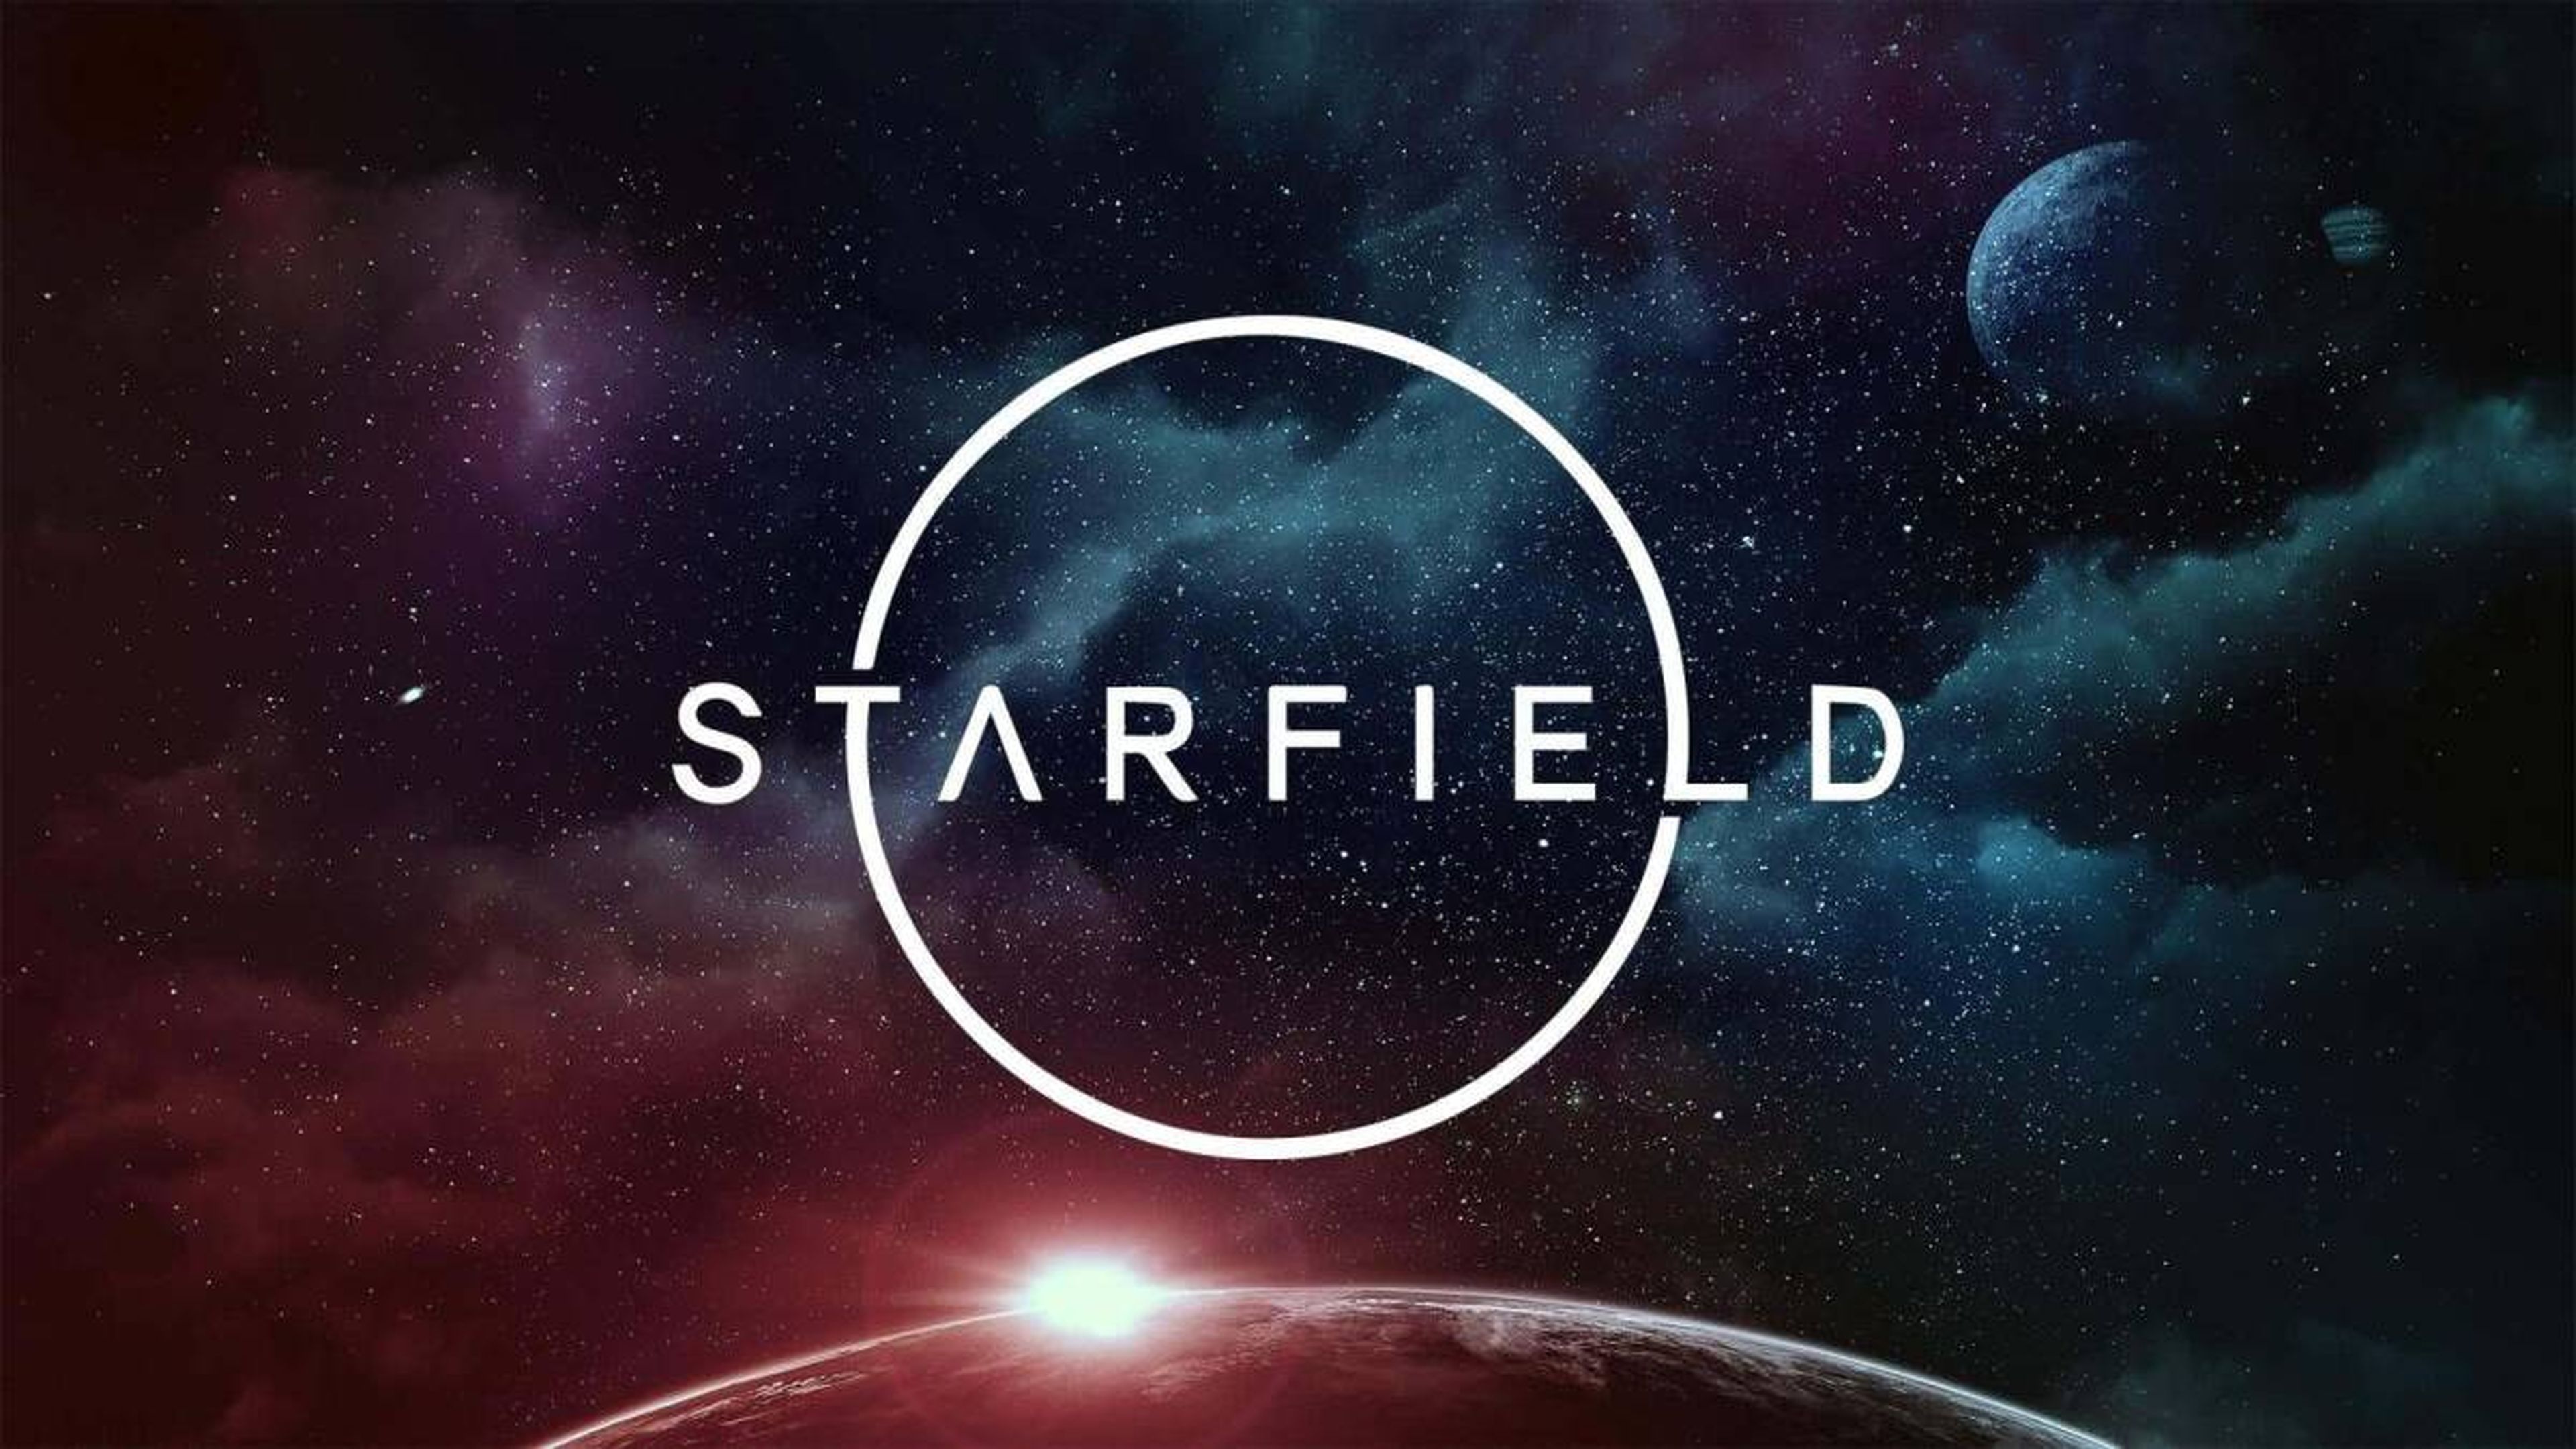 ¿Mostrará 'GameSpot' demos exclusivas de juegos esperados como 'Starfield'?